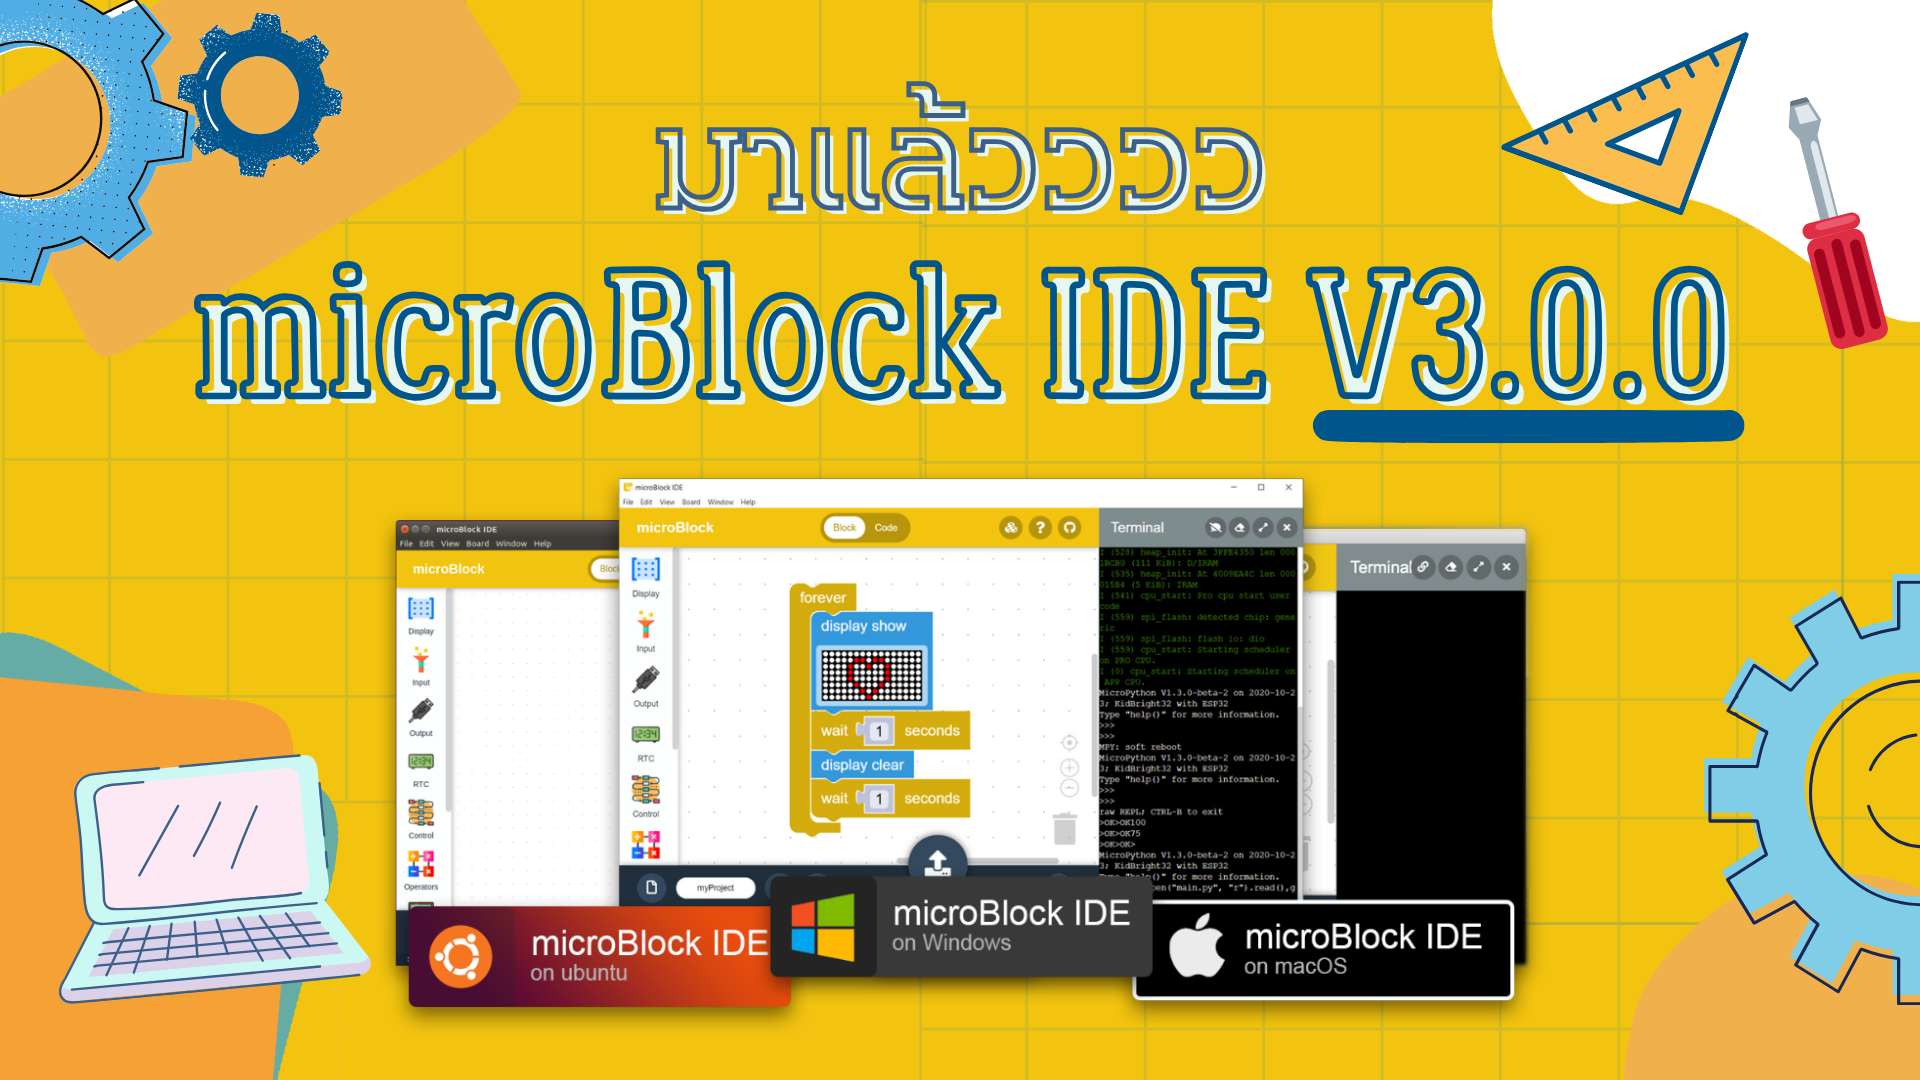 microBlock IDE V3.0.0 มีอะไรใหม่บ้าง